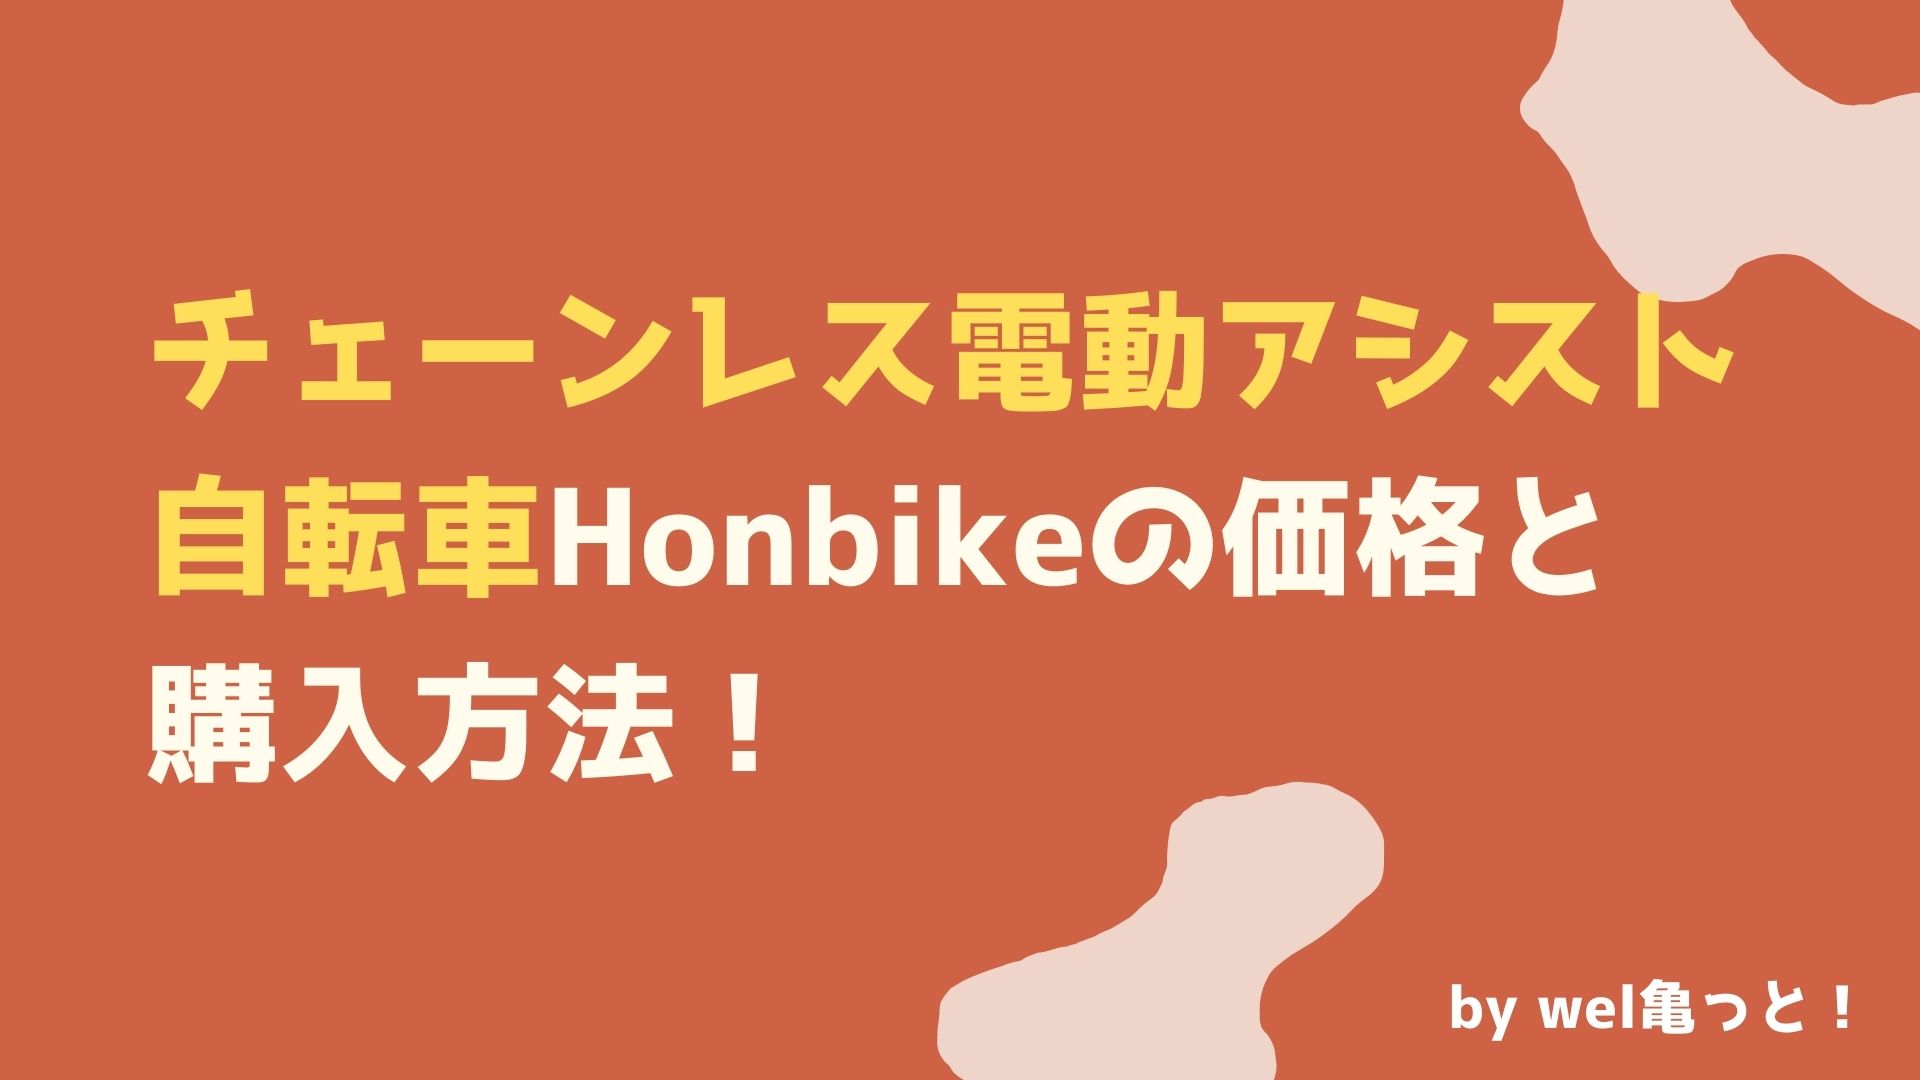 チェーンレス電動アシスト自転車Honbikeの価格と購入方法！  ウェルかめっと！